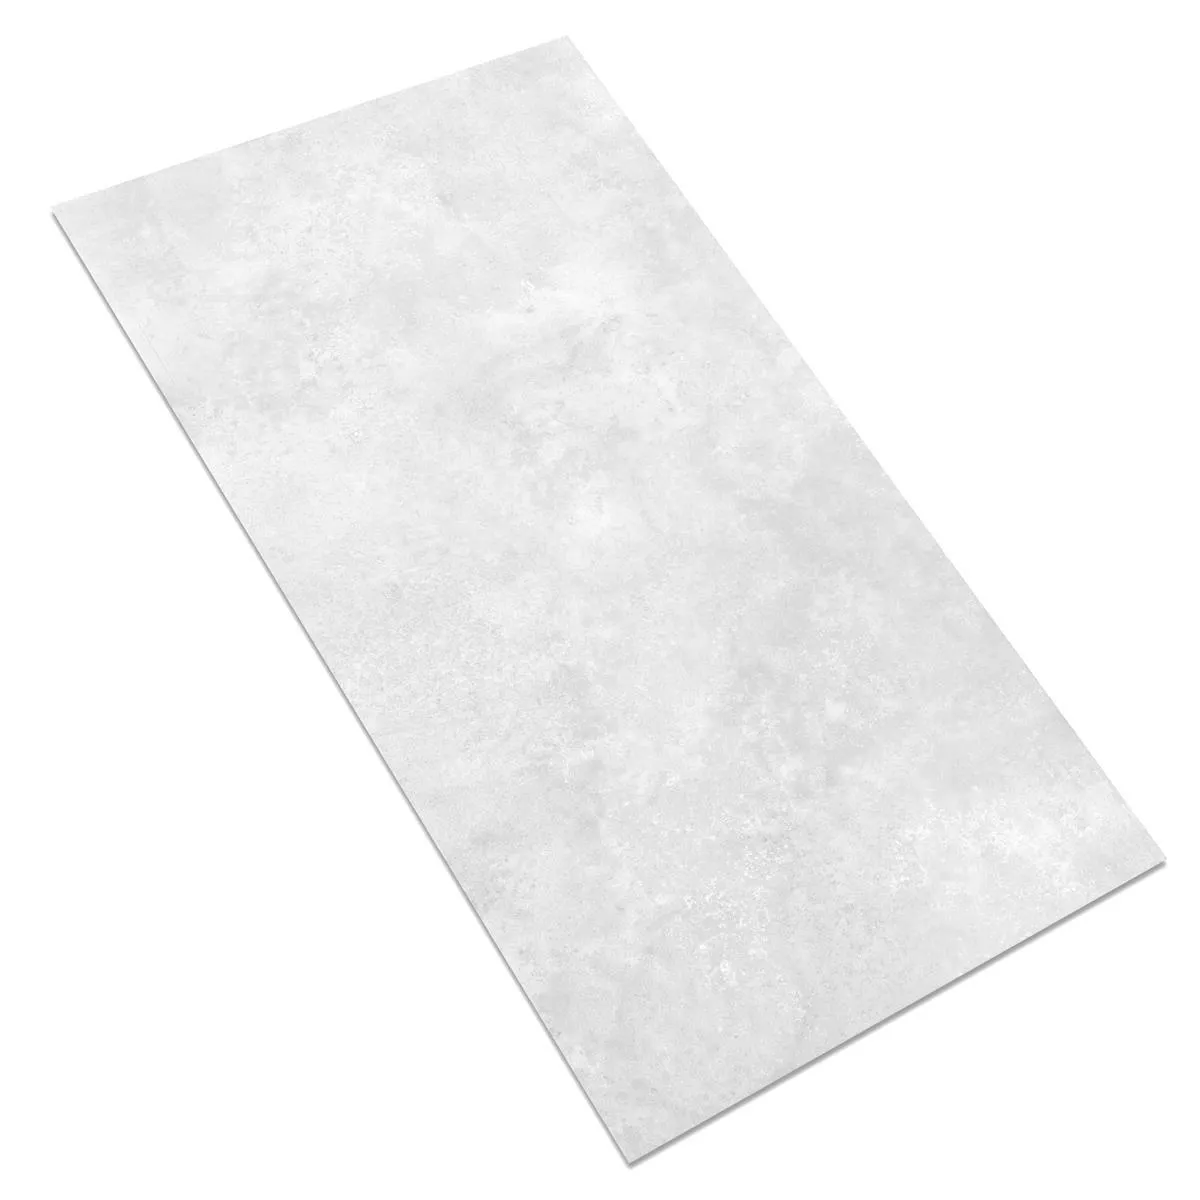 Πρότυπο Πλακάκι Δαπέδου Illusion Μεταλλική Εμφάνιση Lappato Ασπρο 30x60cm